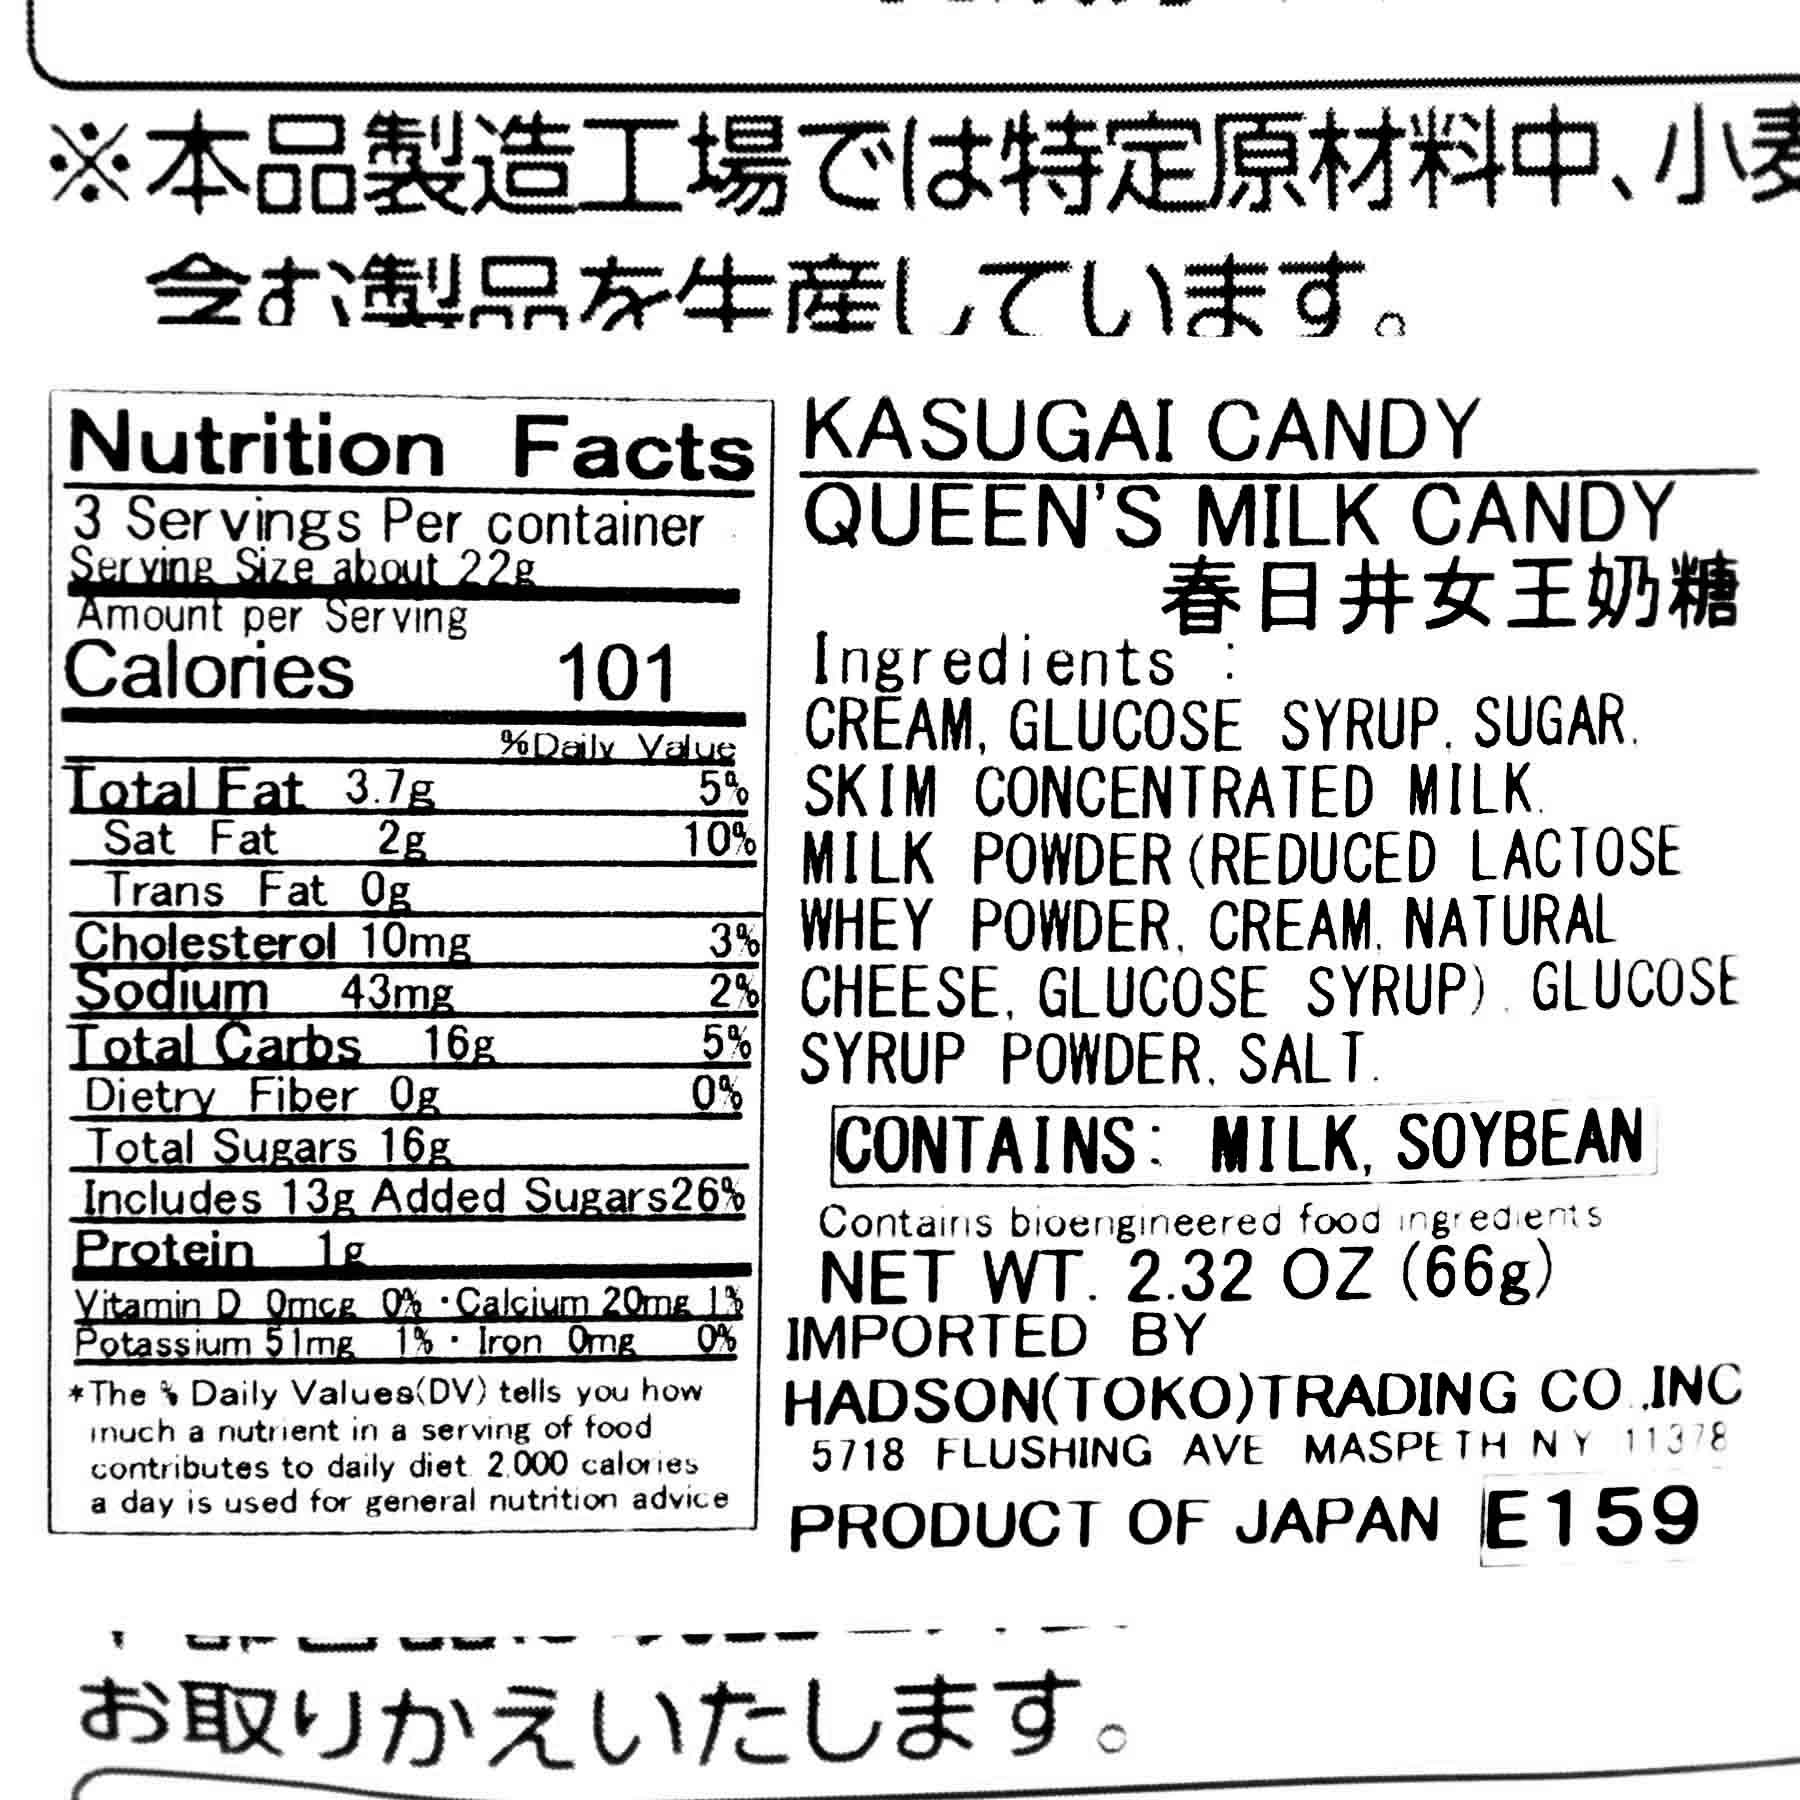 Kasugai Royal Milk Candy | Bokksu Market